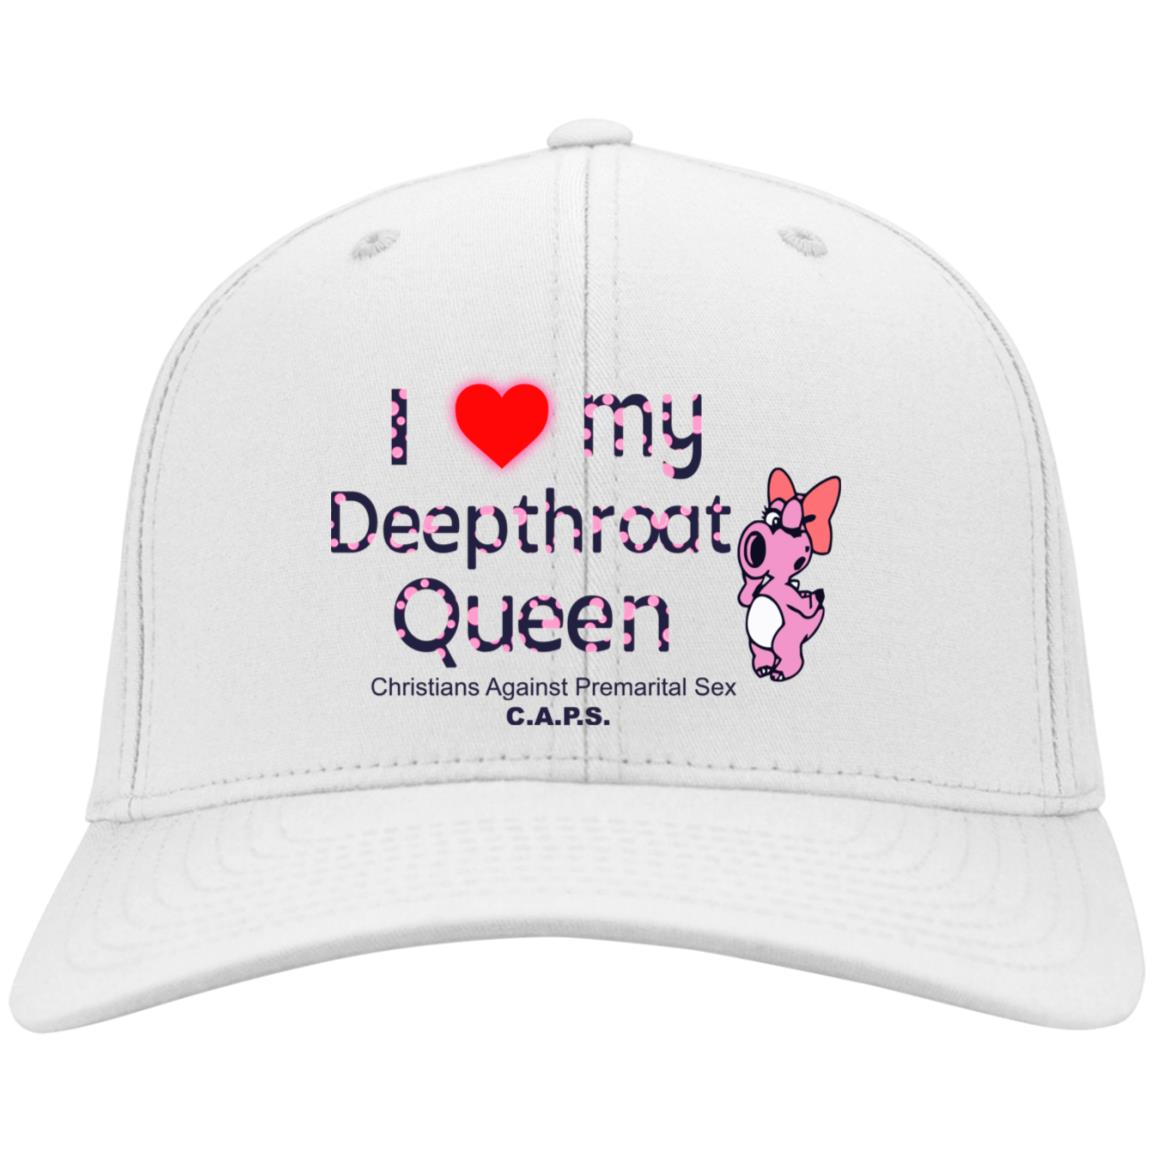 I Love My Deepthroat Queen Christians Against Premarital Sex Caps Hat Cap Lelemoon